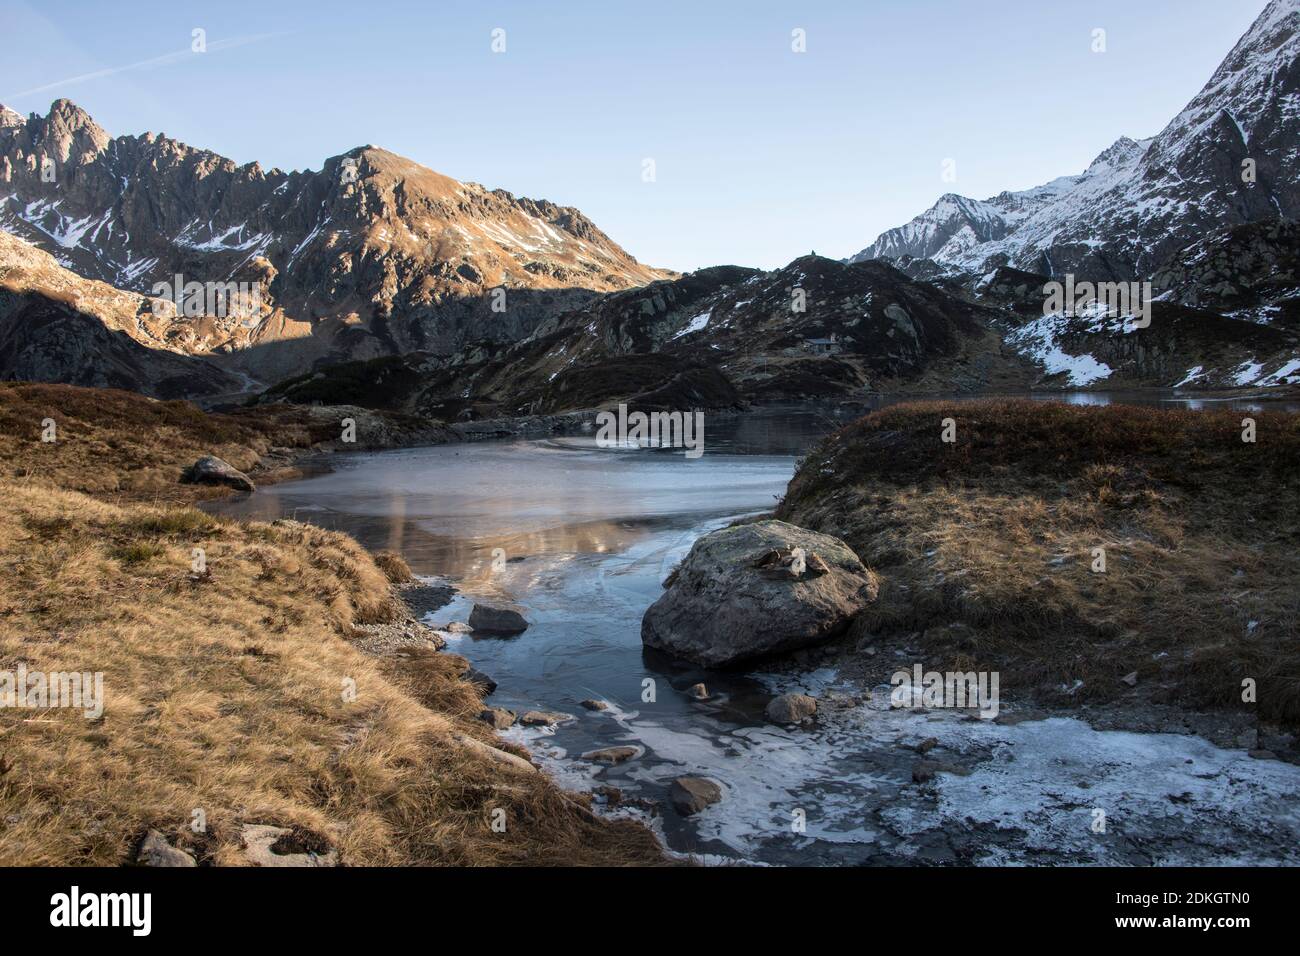 premiers rayons de soleil sur un lac de montagne à moitié gelé Banque D'Images